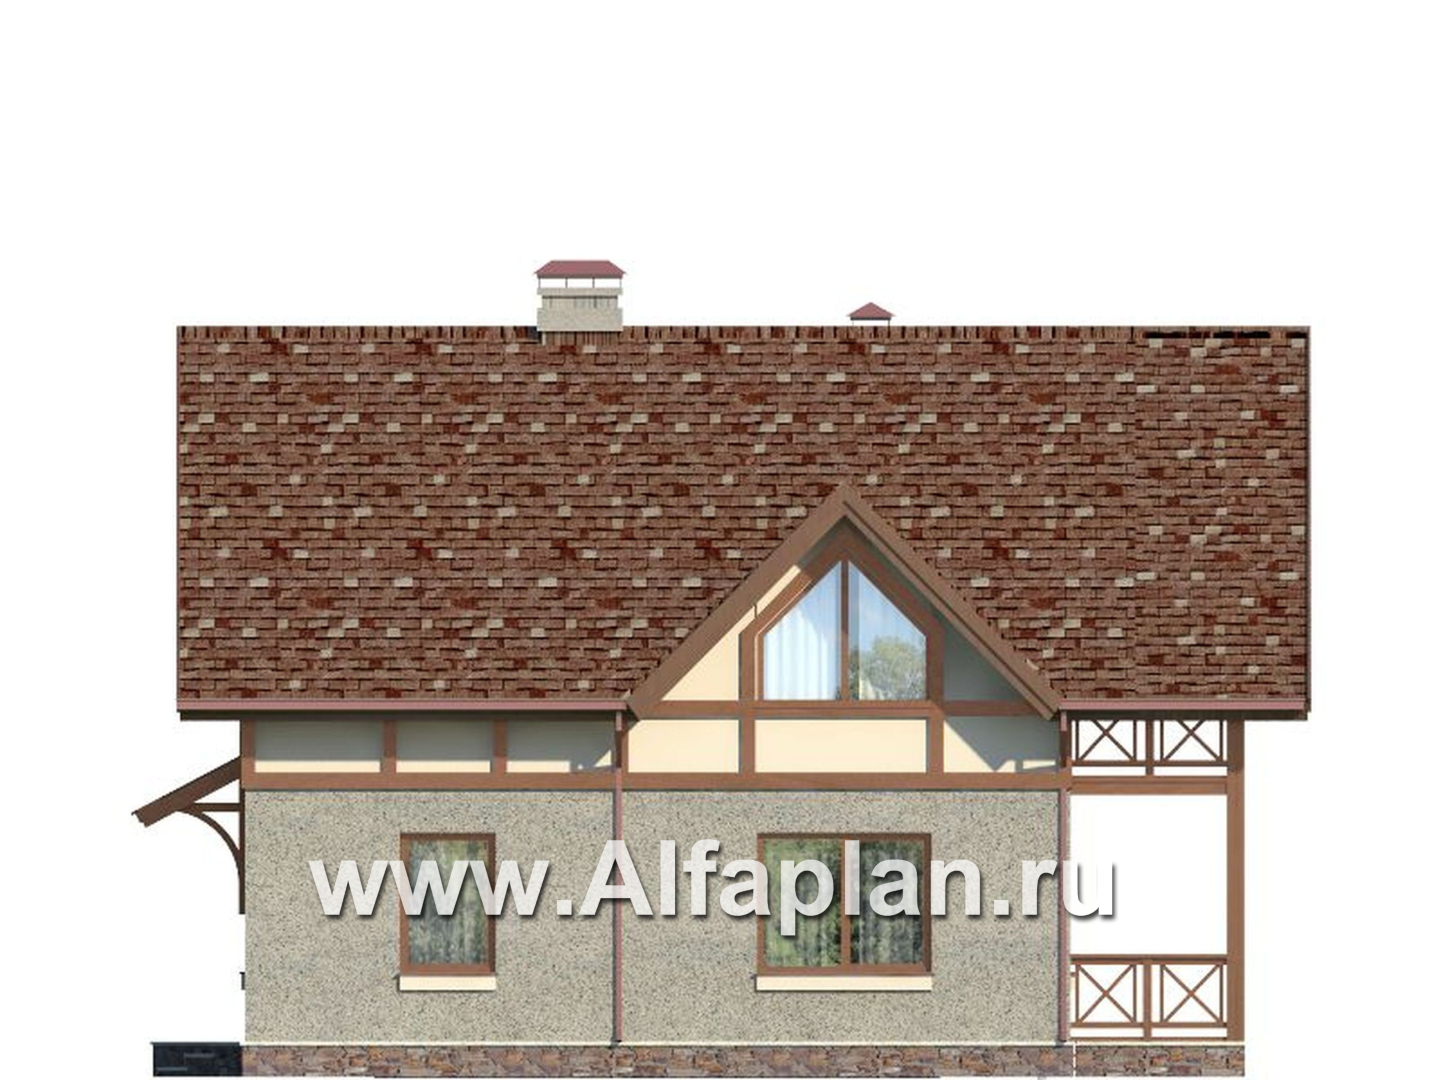 Проект дома с мансардой, из газобетона, планировка с террасой и кабинетом на 1 эт, в стиле фахверк - фасад дома